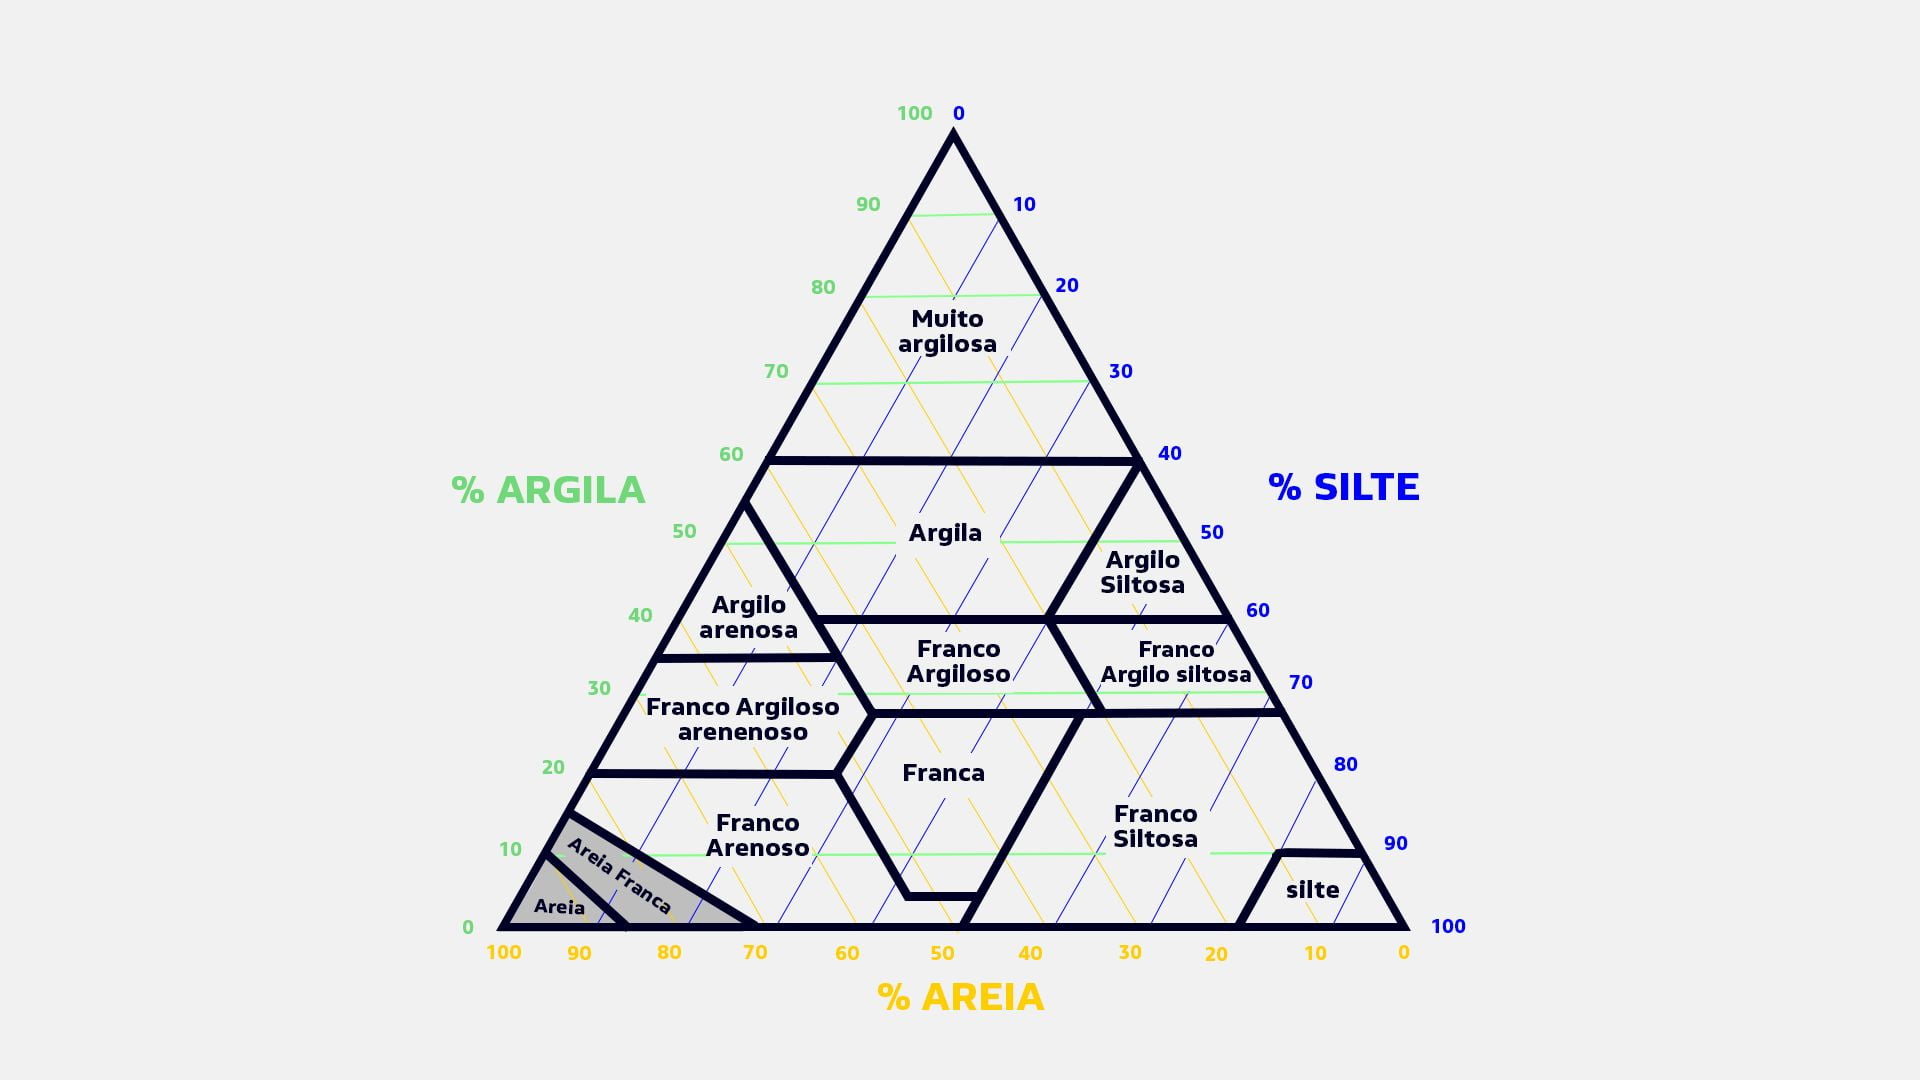 Triângulo textural explicando texturas e tipos de solos arenosos